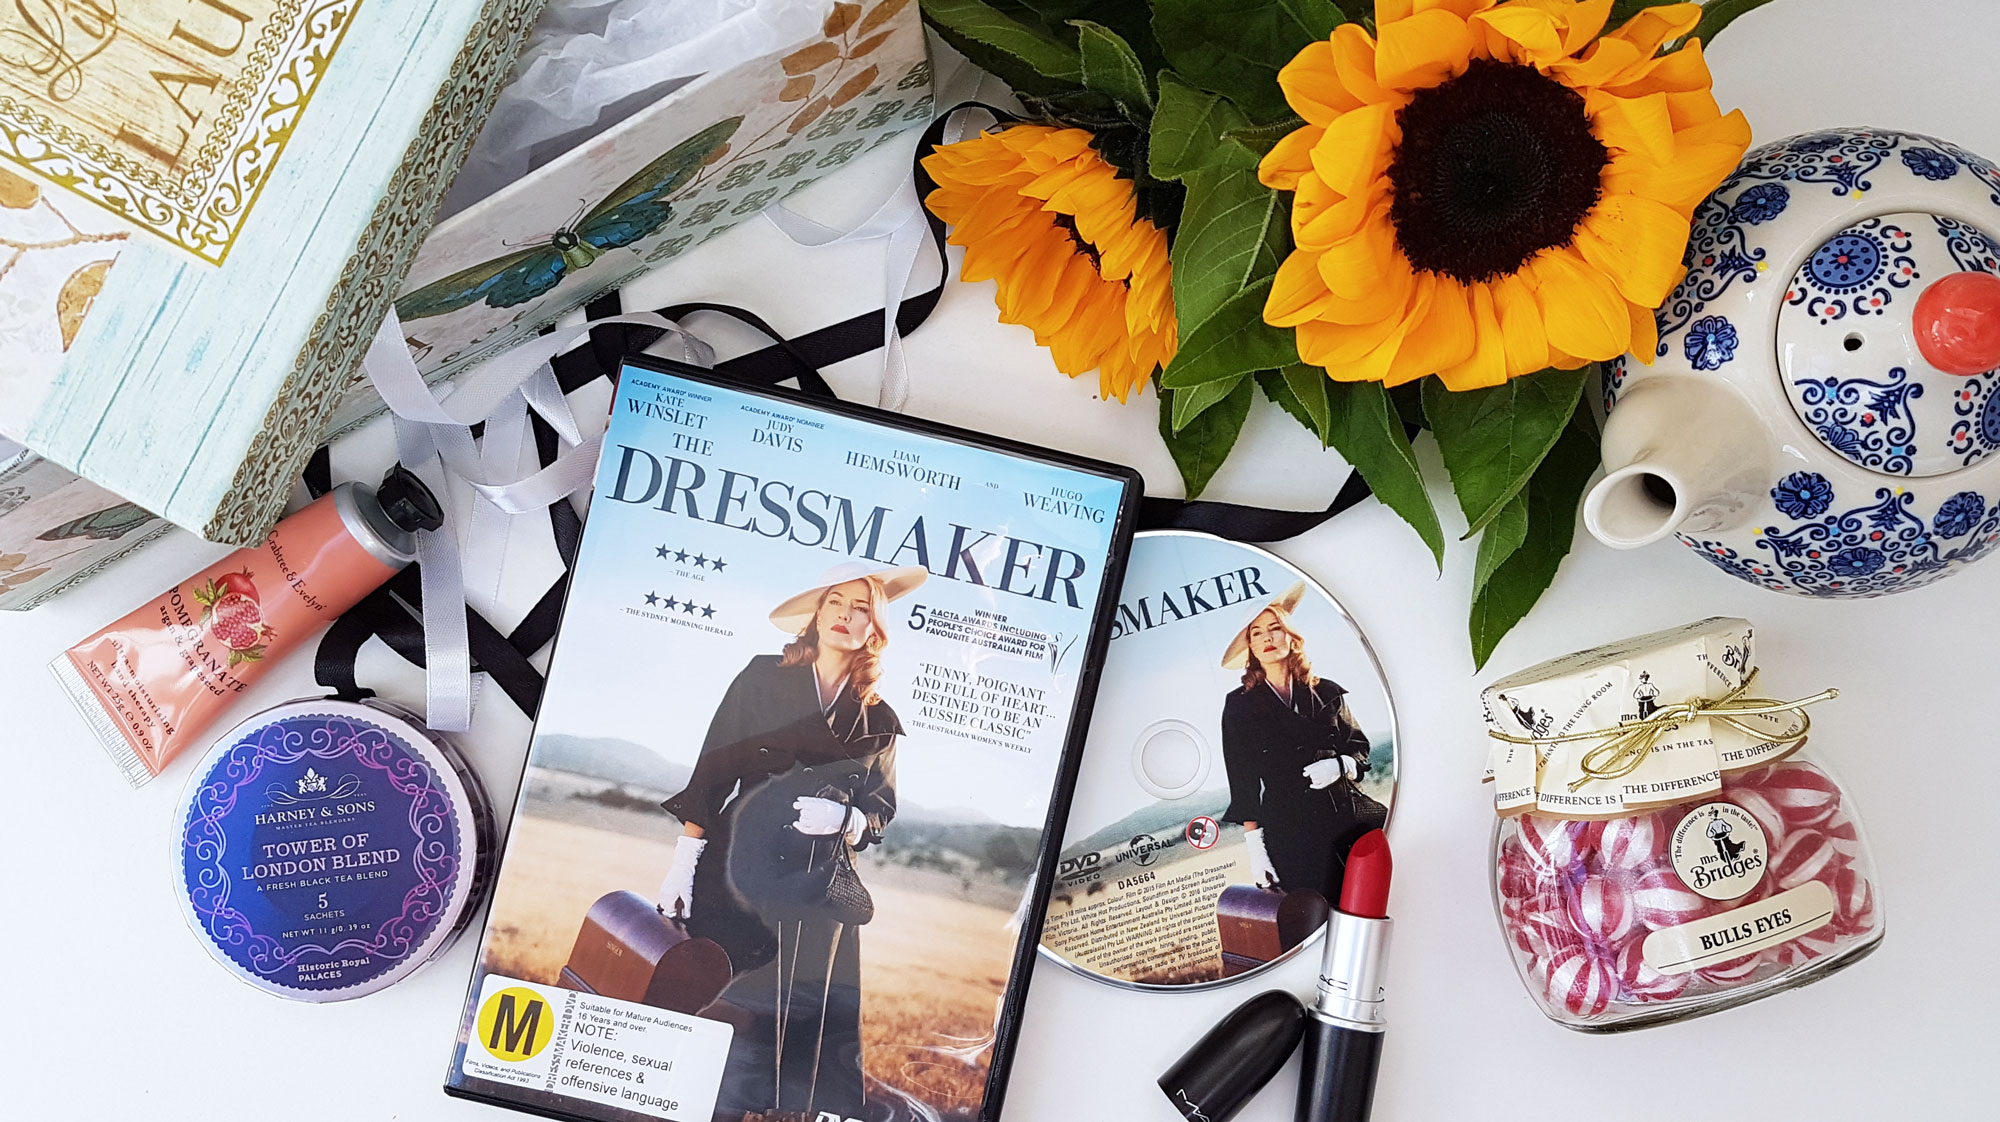 New Zealand's Top Mummy Blogger Dressmaker review